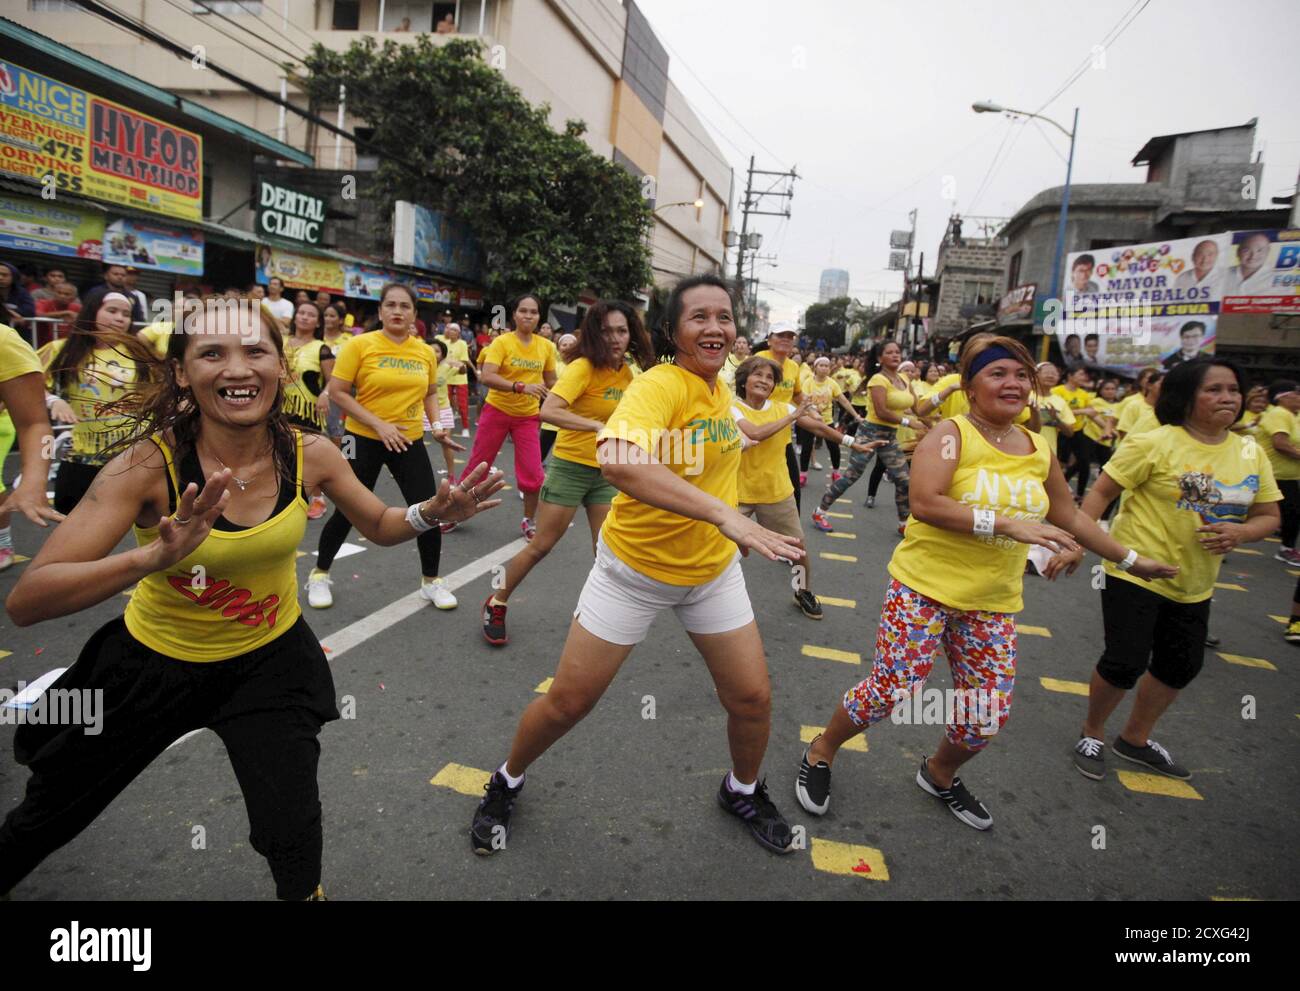 Gesundheitsenthusiasten tanzen zu High-Tempo-Musik, während sie an einem Guinness-Weltrekord-Versuch für die größte Zumba-Klasse teilnehmen, die entlang der Hauptstraßen von Mandaluyong City, Metro Manila, 19. Juli 2015, abgehalten wird. Mandaluyong Stadt erreichte die Guinness-Weltrekorde für die größte Zumba-Klasse mit einer offiziellen Zählung von 12,975 Menschen gleichzeitig tun Zumba, stürzen Cebu City Rekord von 8,232 Menschen im Oktober 2014 statt, sagte ein Guinness World Records offiziellen. REUTERS/Lorgina Minguito Stockfoto